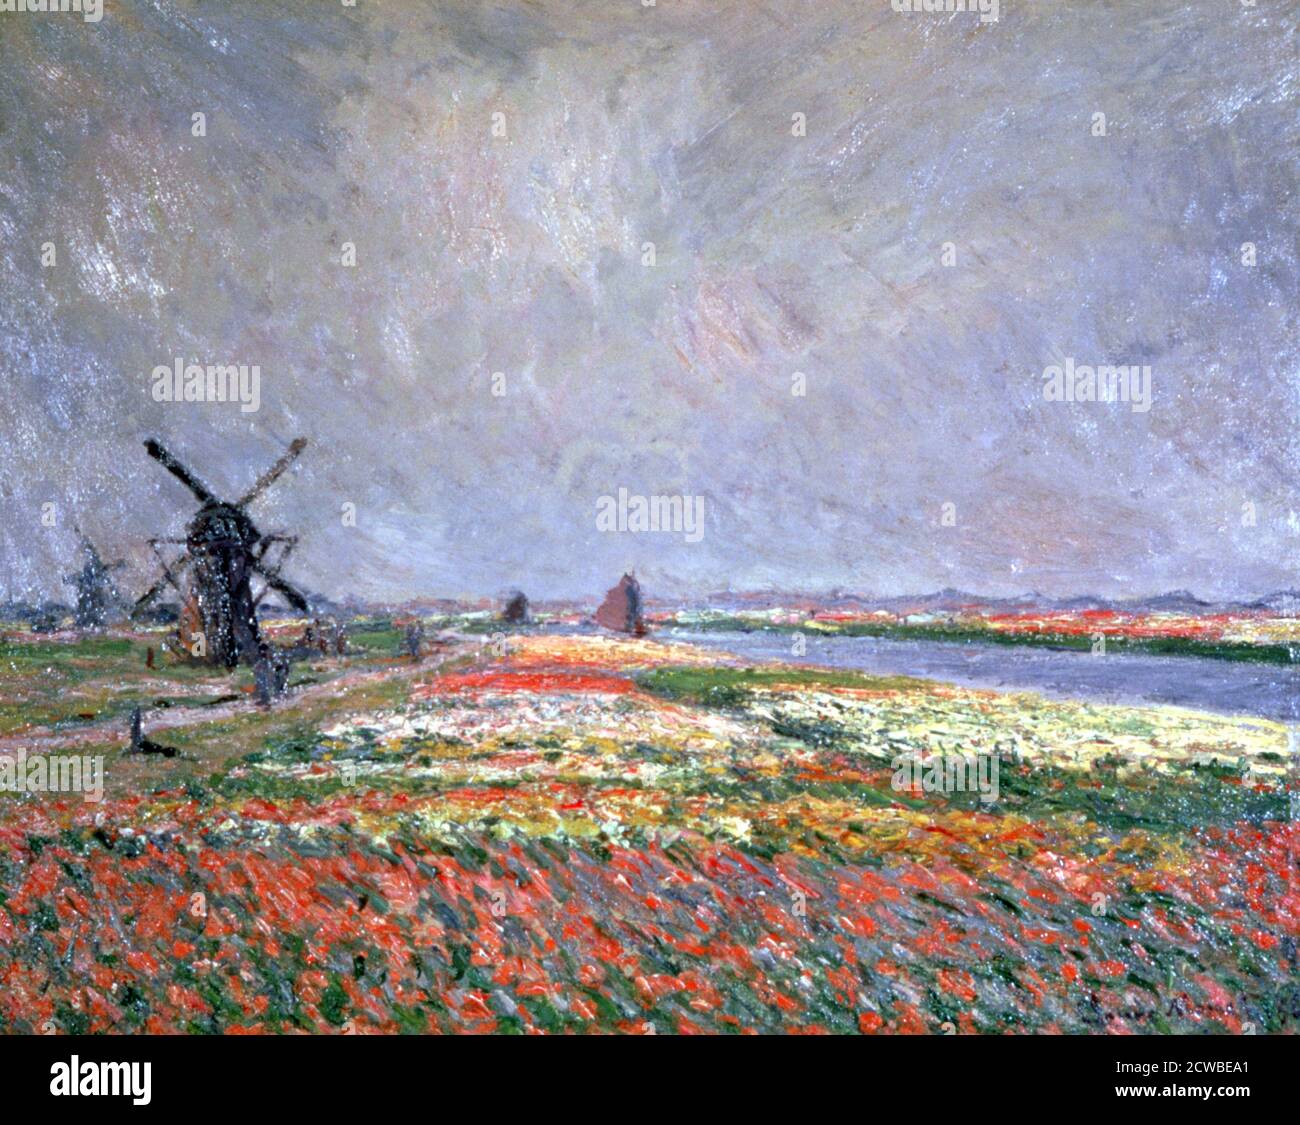 Champs de tulipes près de Leiden, 1886. Artiste: Claude Monet. Monet était un peintre français, un fondateur de la peinture impressionniste française et le praticien le plus cohérent et le plus prolifique de la philosophie des mouvements. Banque D'Images